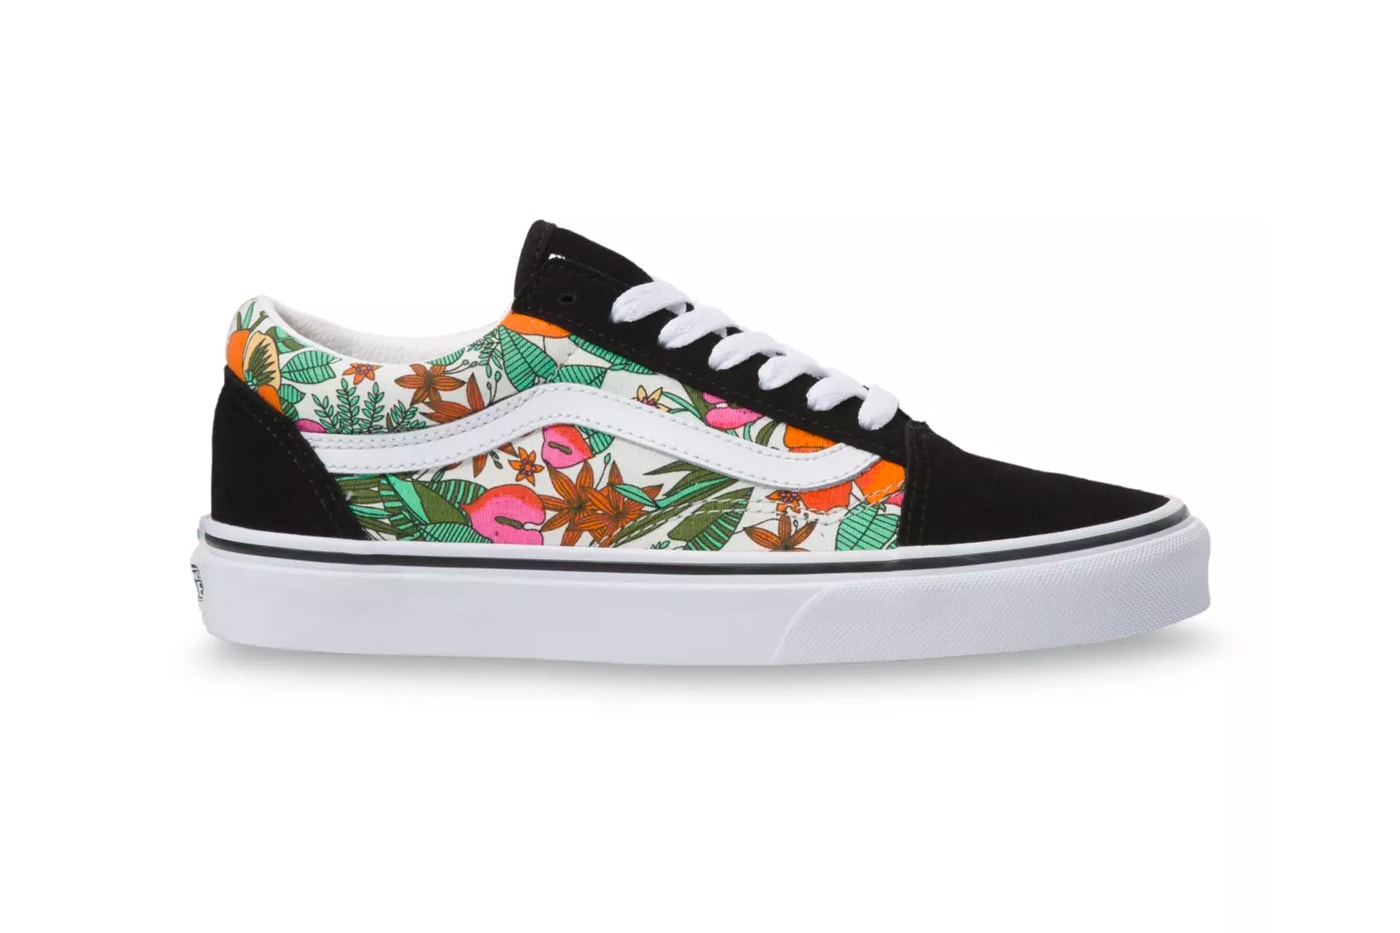 vans floral multi tropic slip on sk8 hi authentic old skool sneakers summer spring graphic print